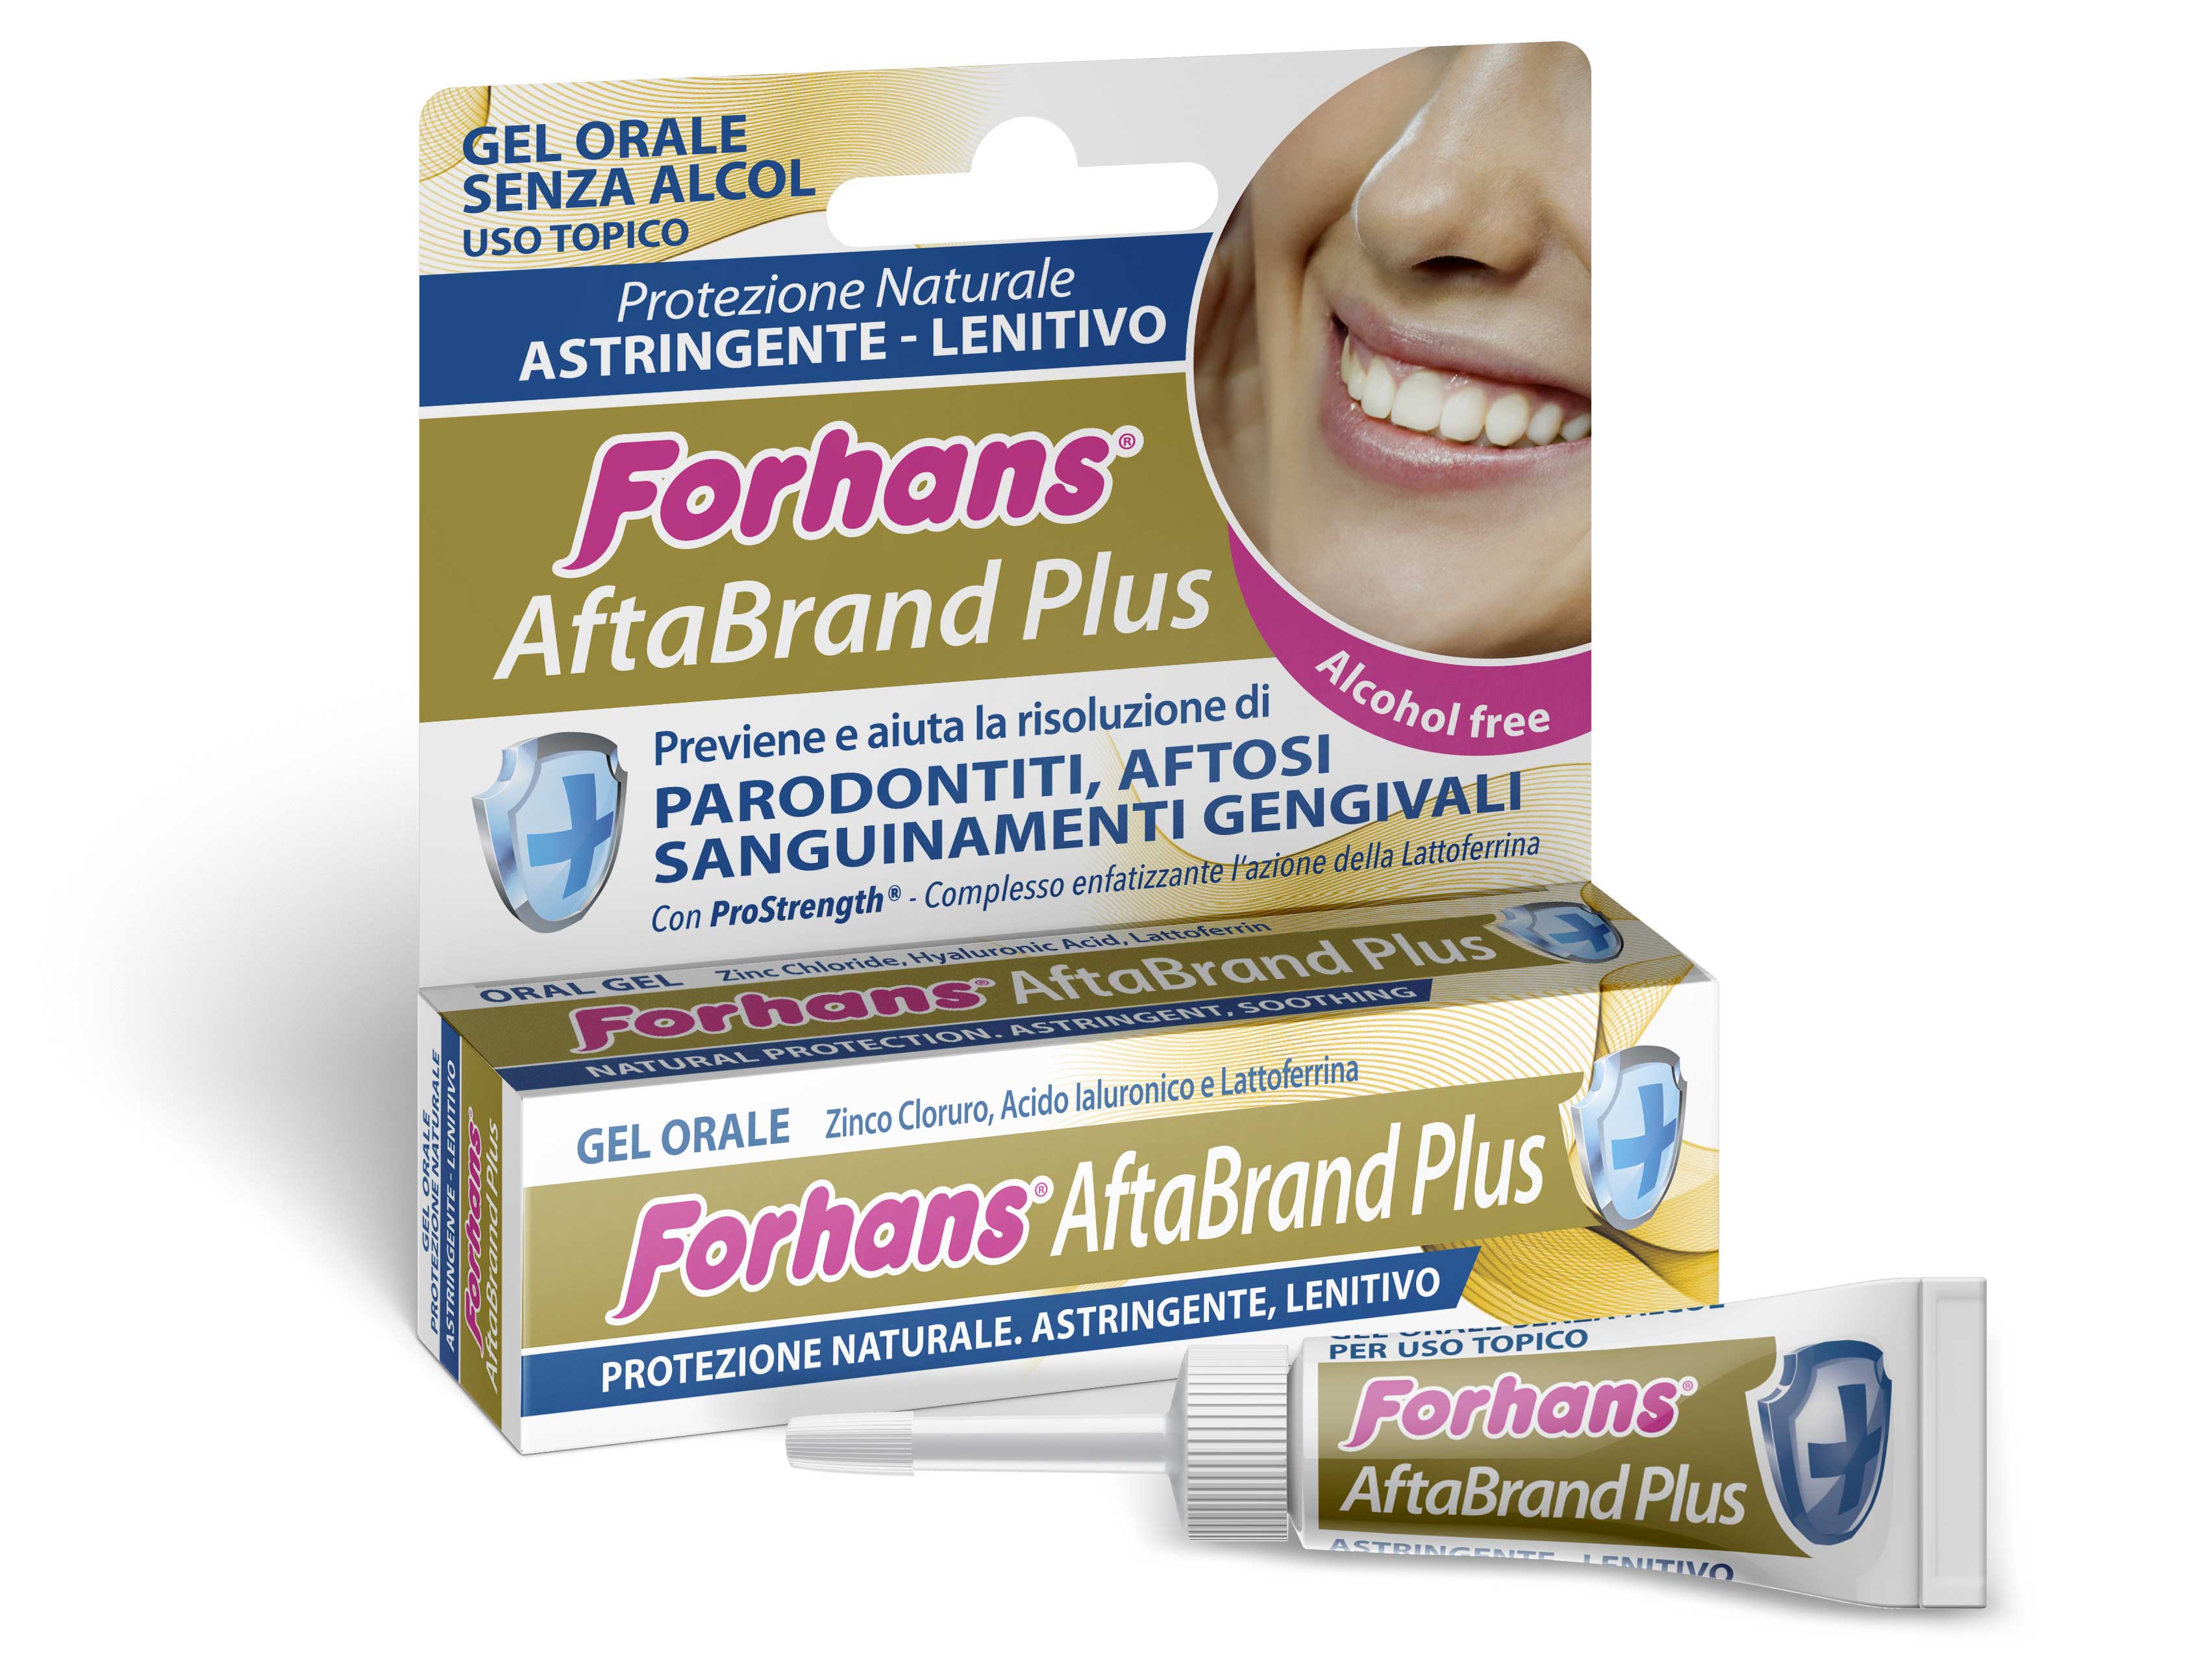 Forhans lancia AftaBrand Plus il nuovo gel orale che contrasta le più comuni problematiche del cavo orale